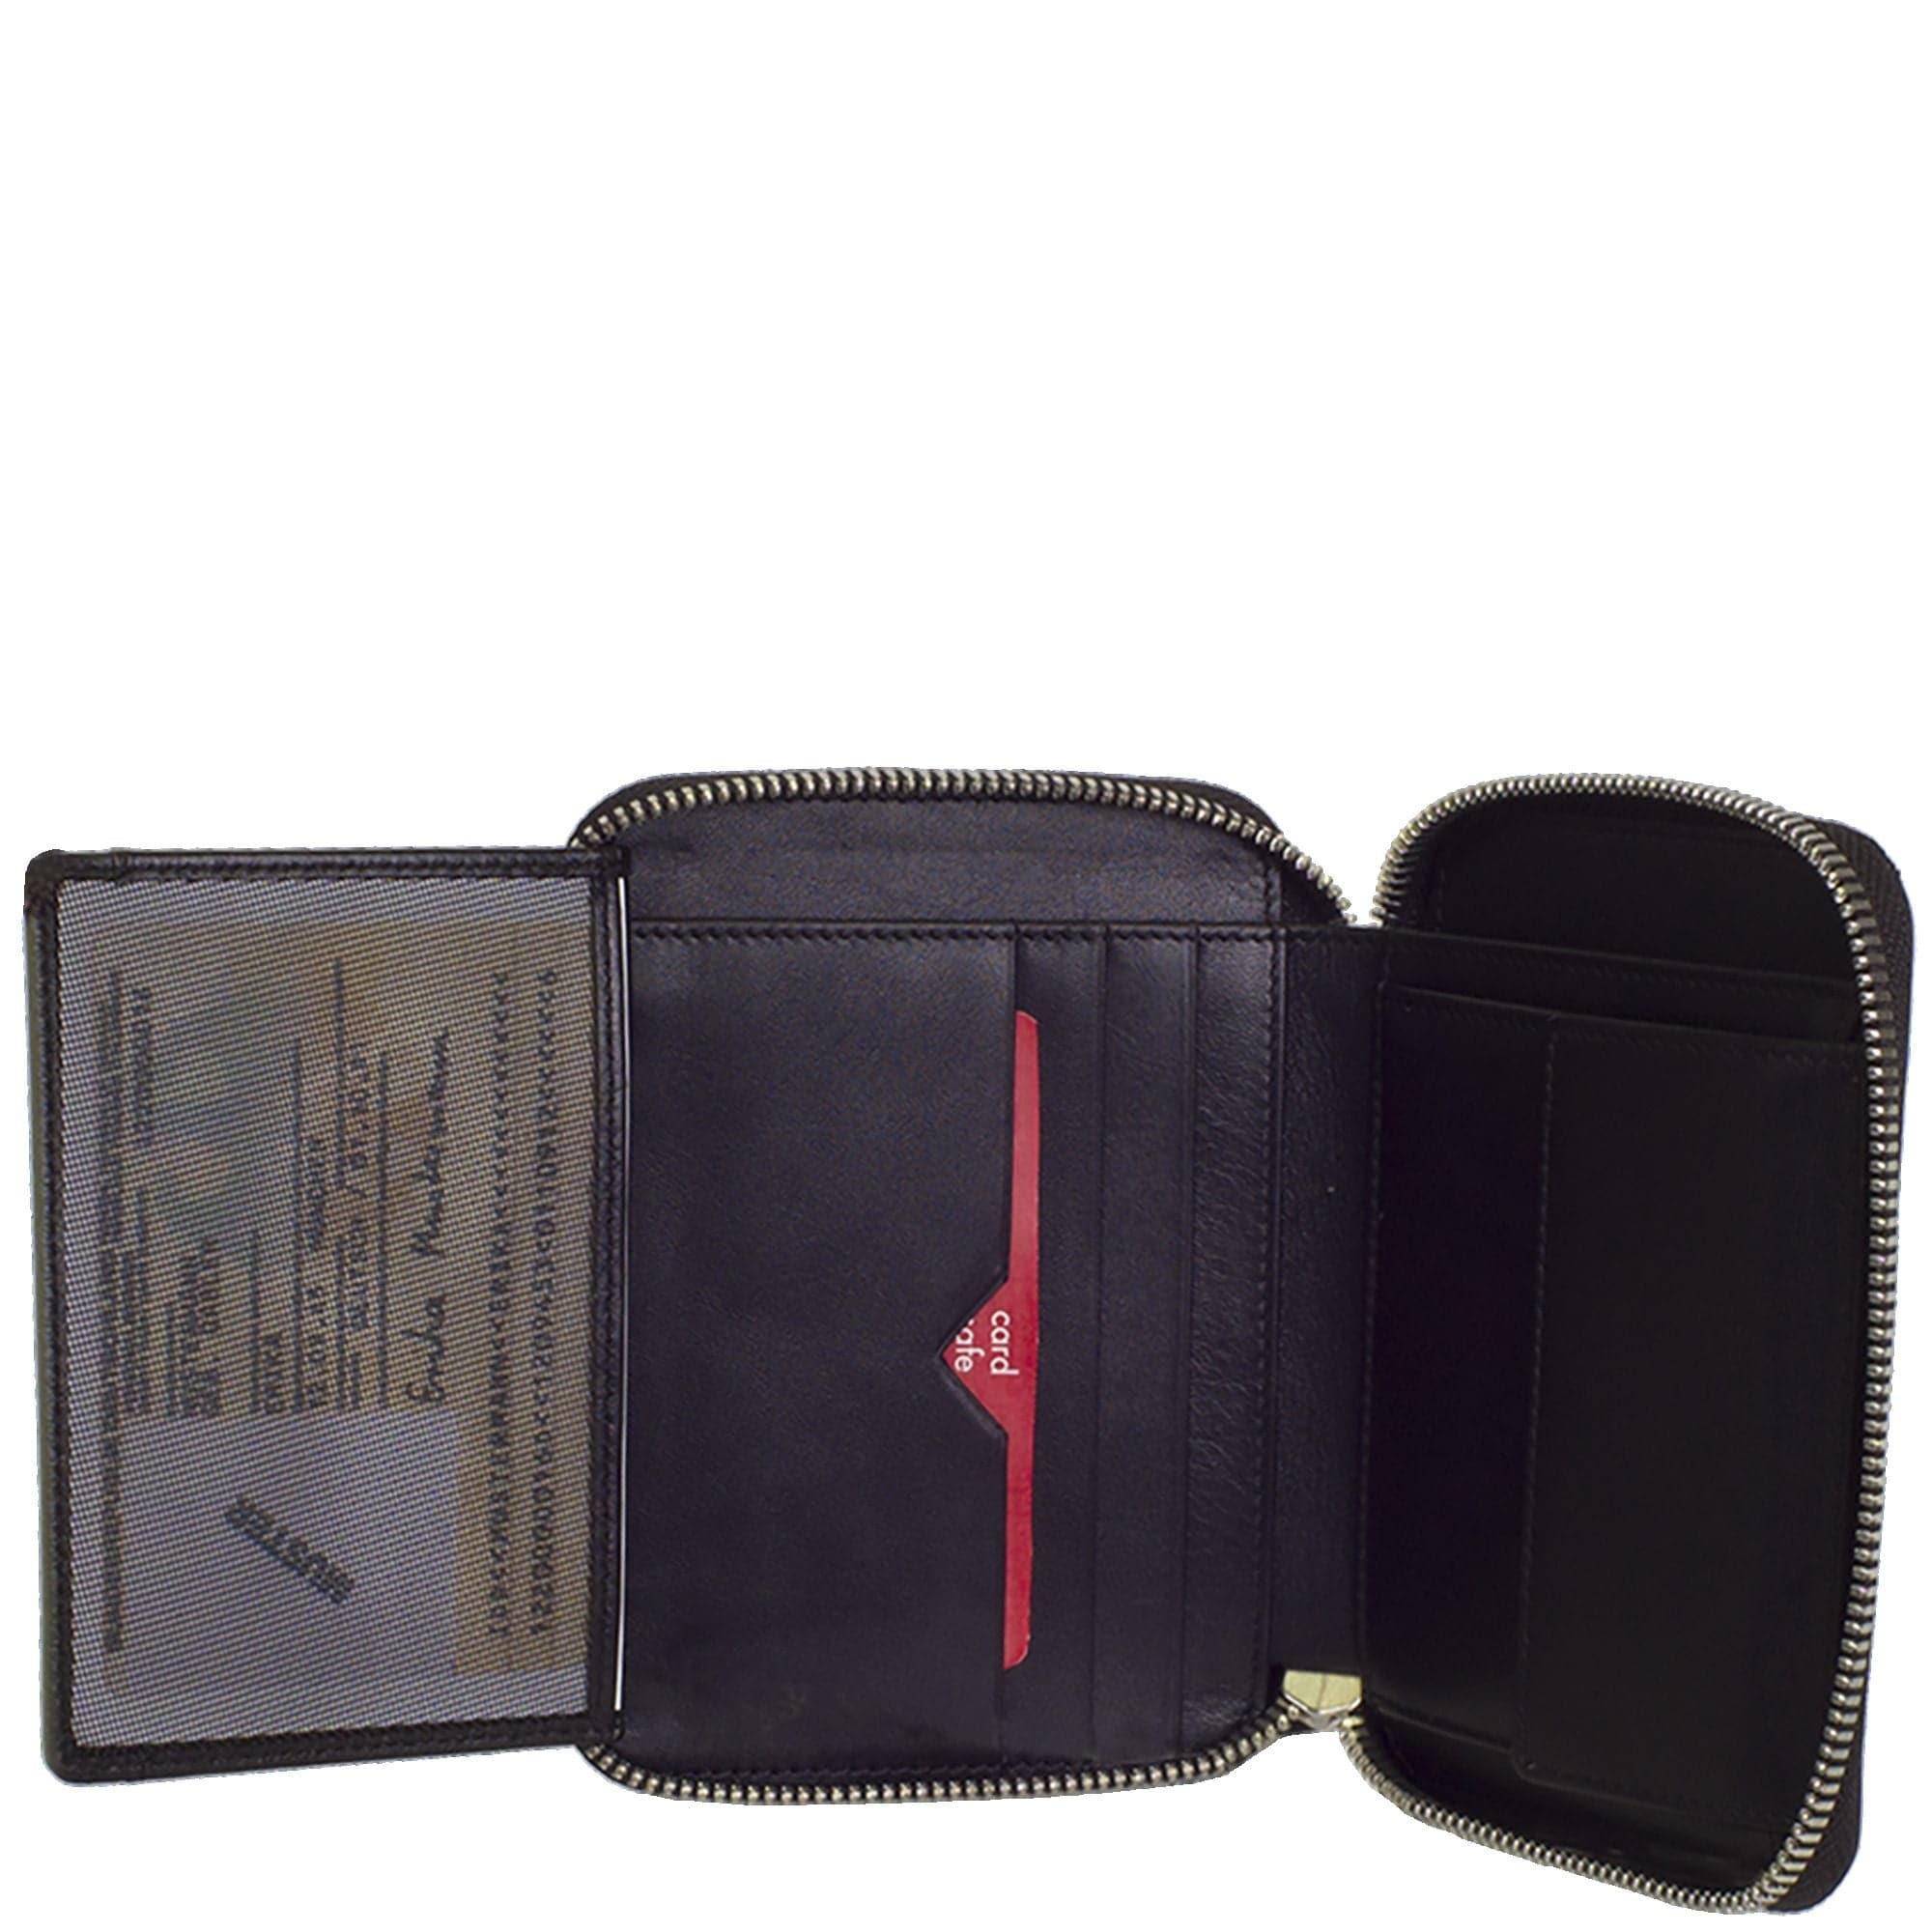 Geldbörse Portemonnaie Leder schwarz mit Reißverschluss